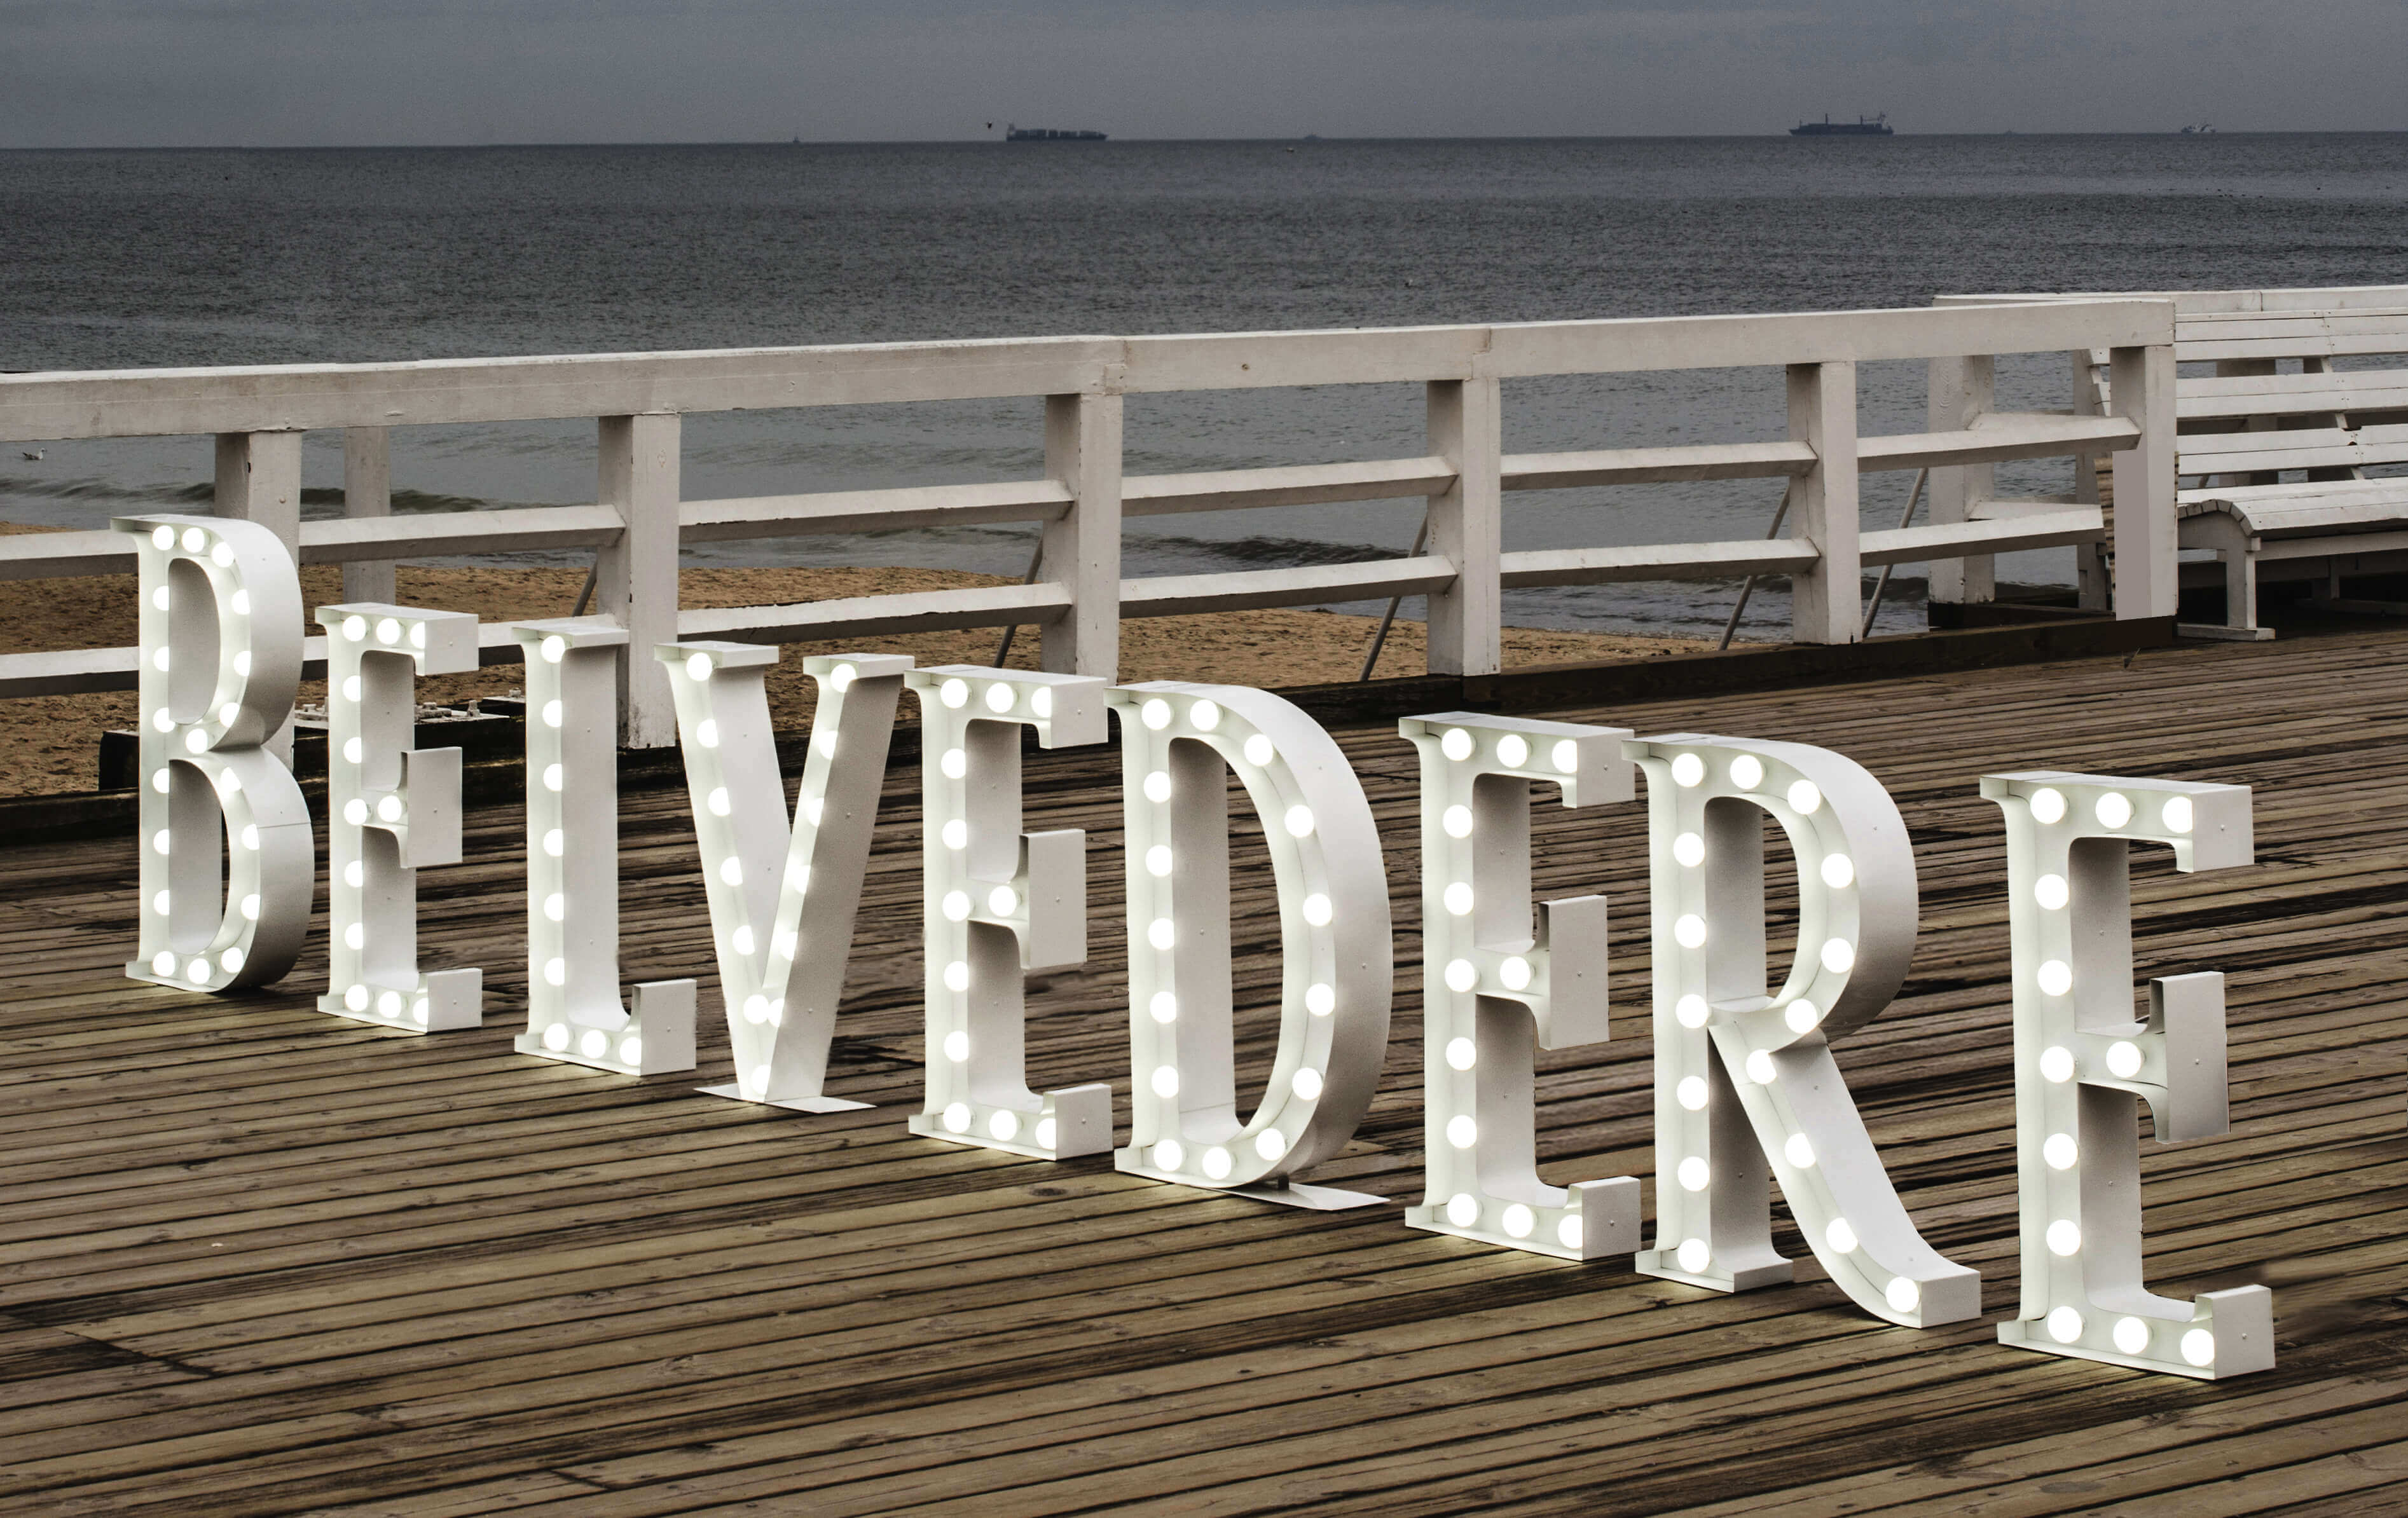 Belvedere - Belvedere - Stehende Buchstaben mit Glühbirnen auf der Seebrücke